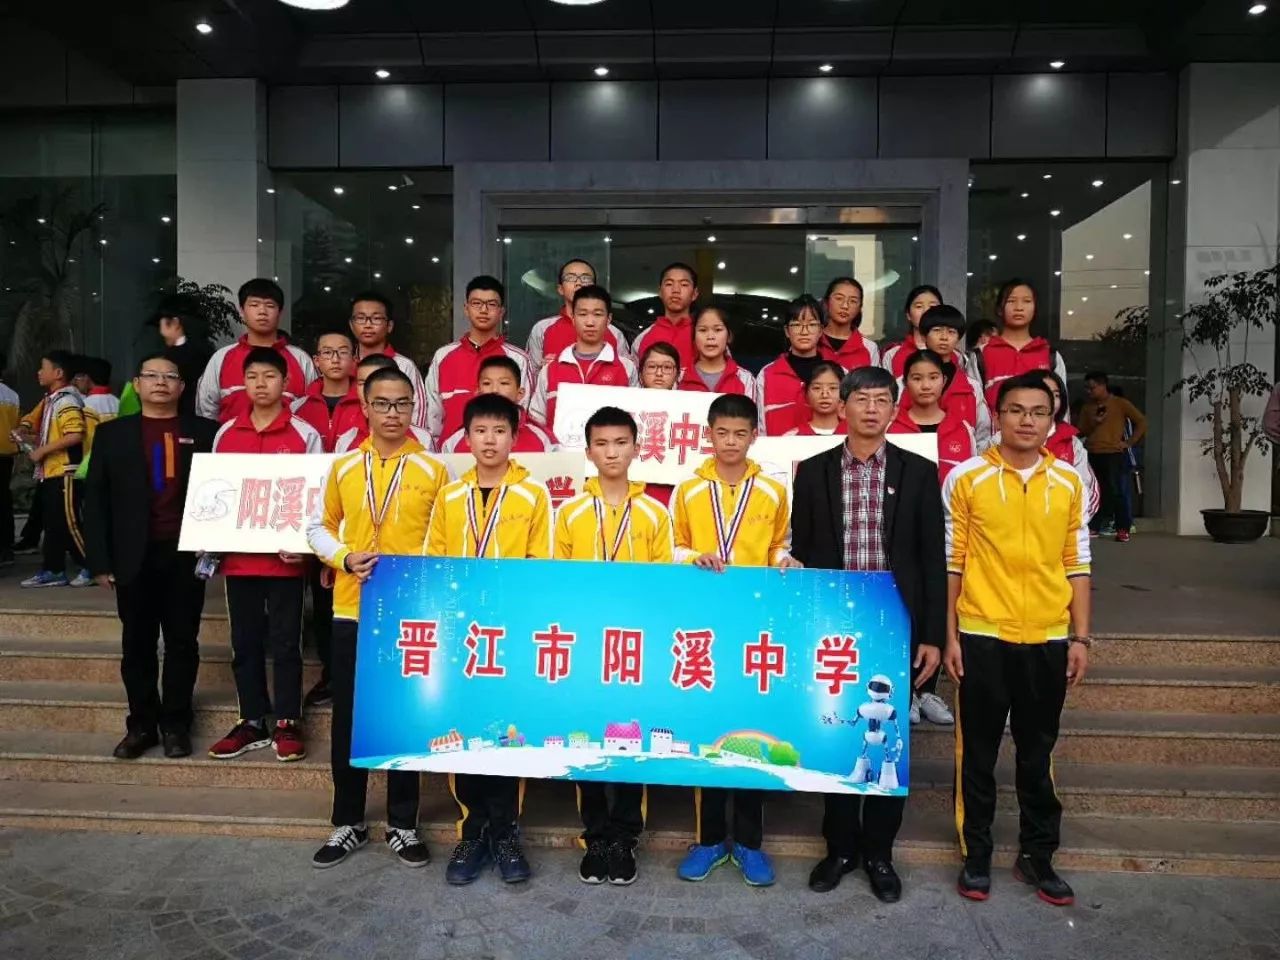 热烈祝贺晋江市南侨中学,阳溪中学机器人代表队在2017年艾艾屋杯